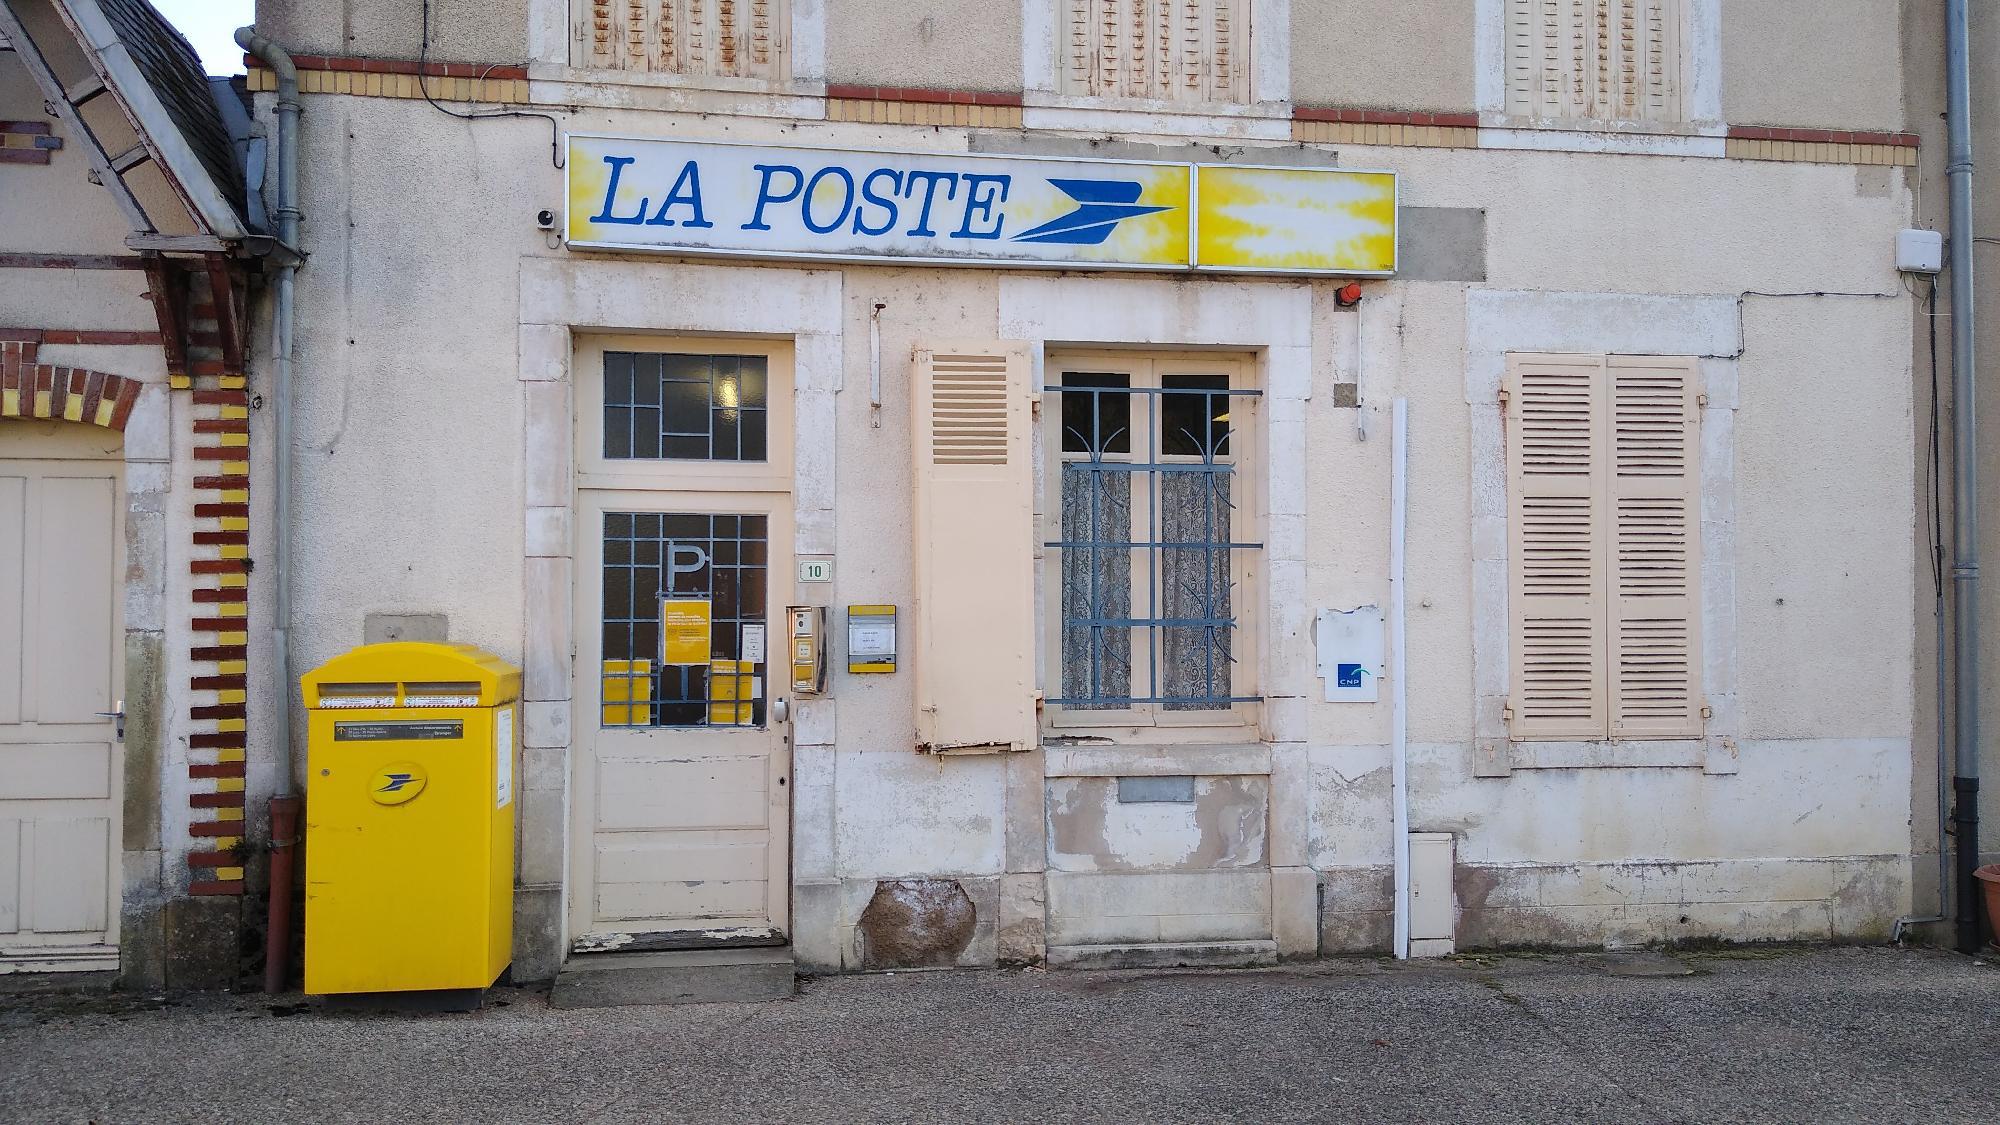 Images La Poste - Closed